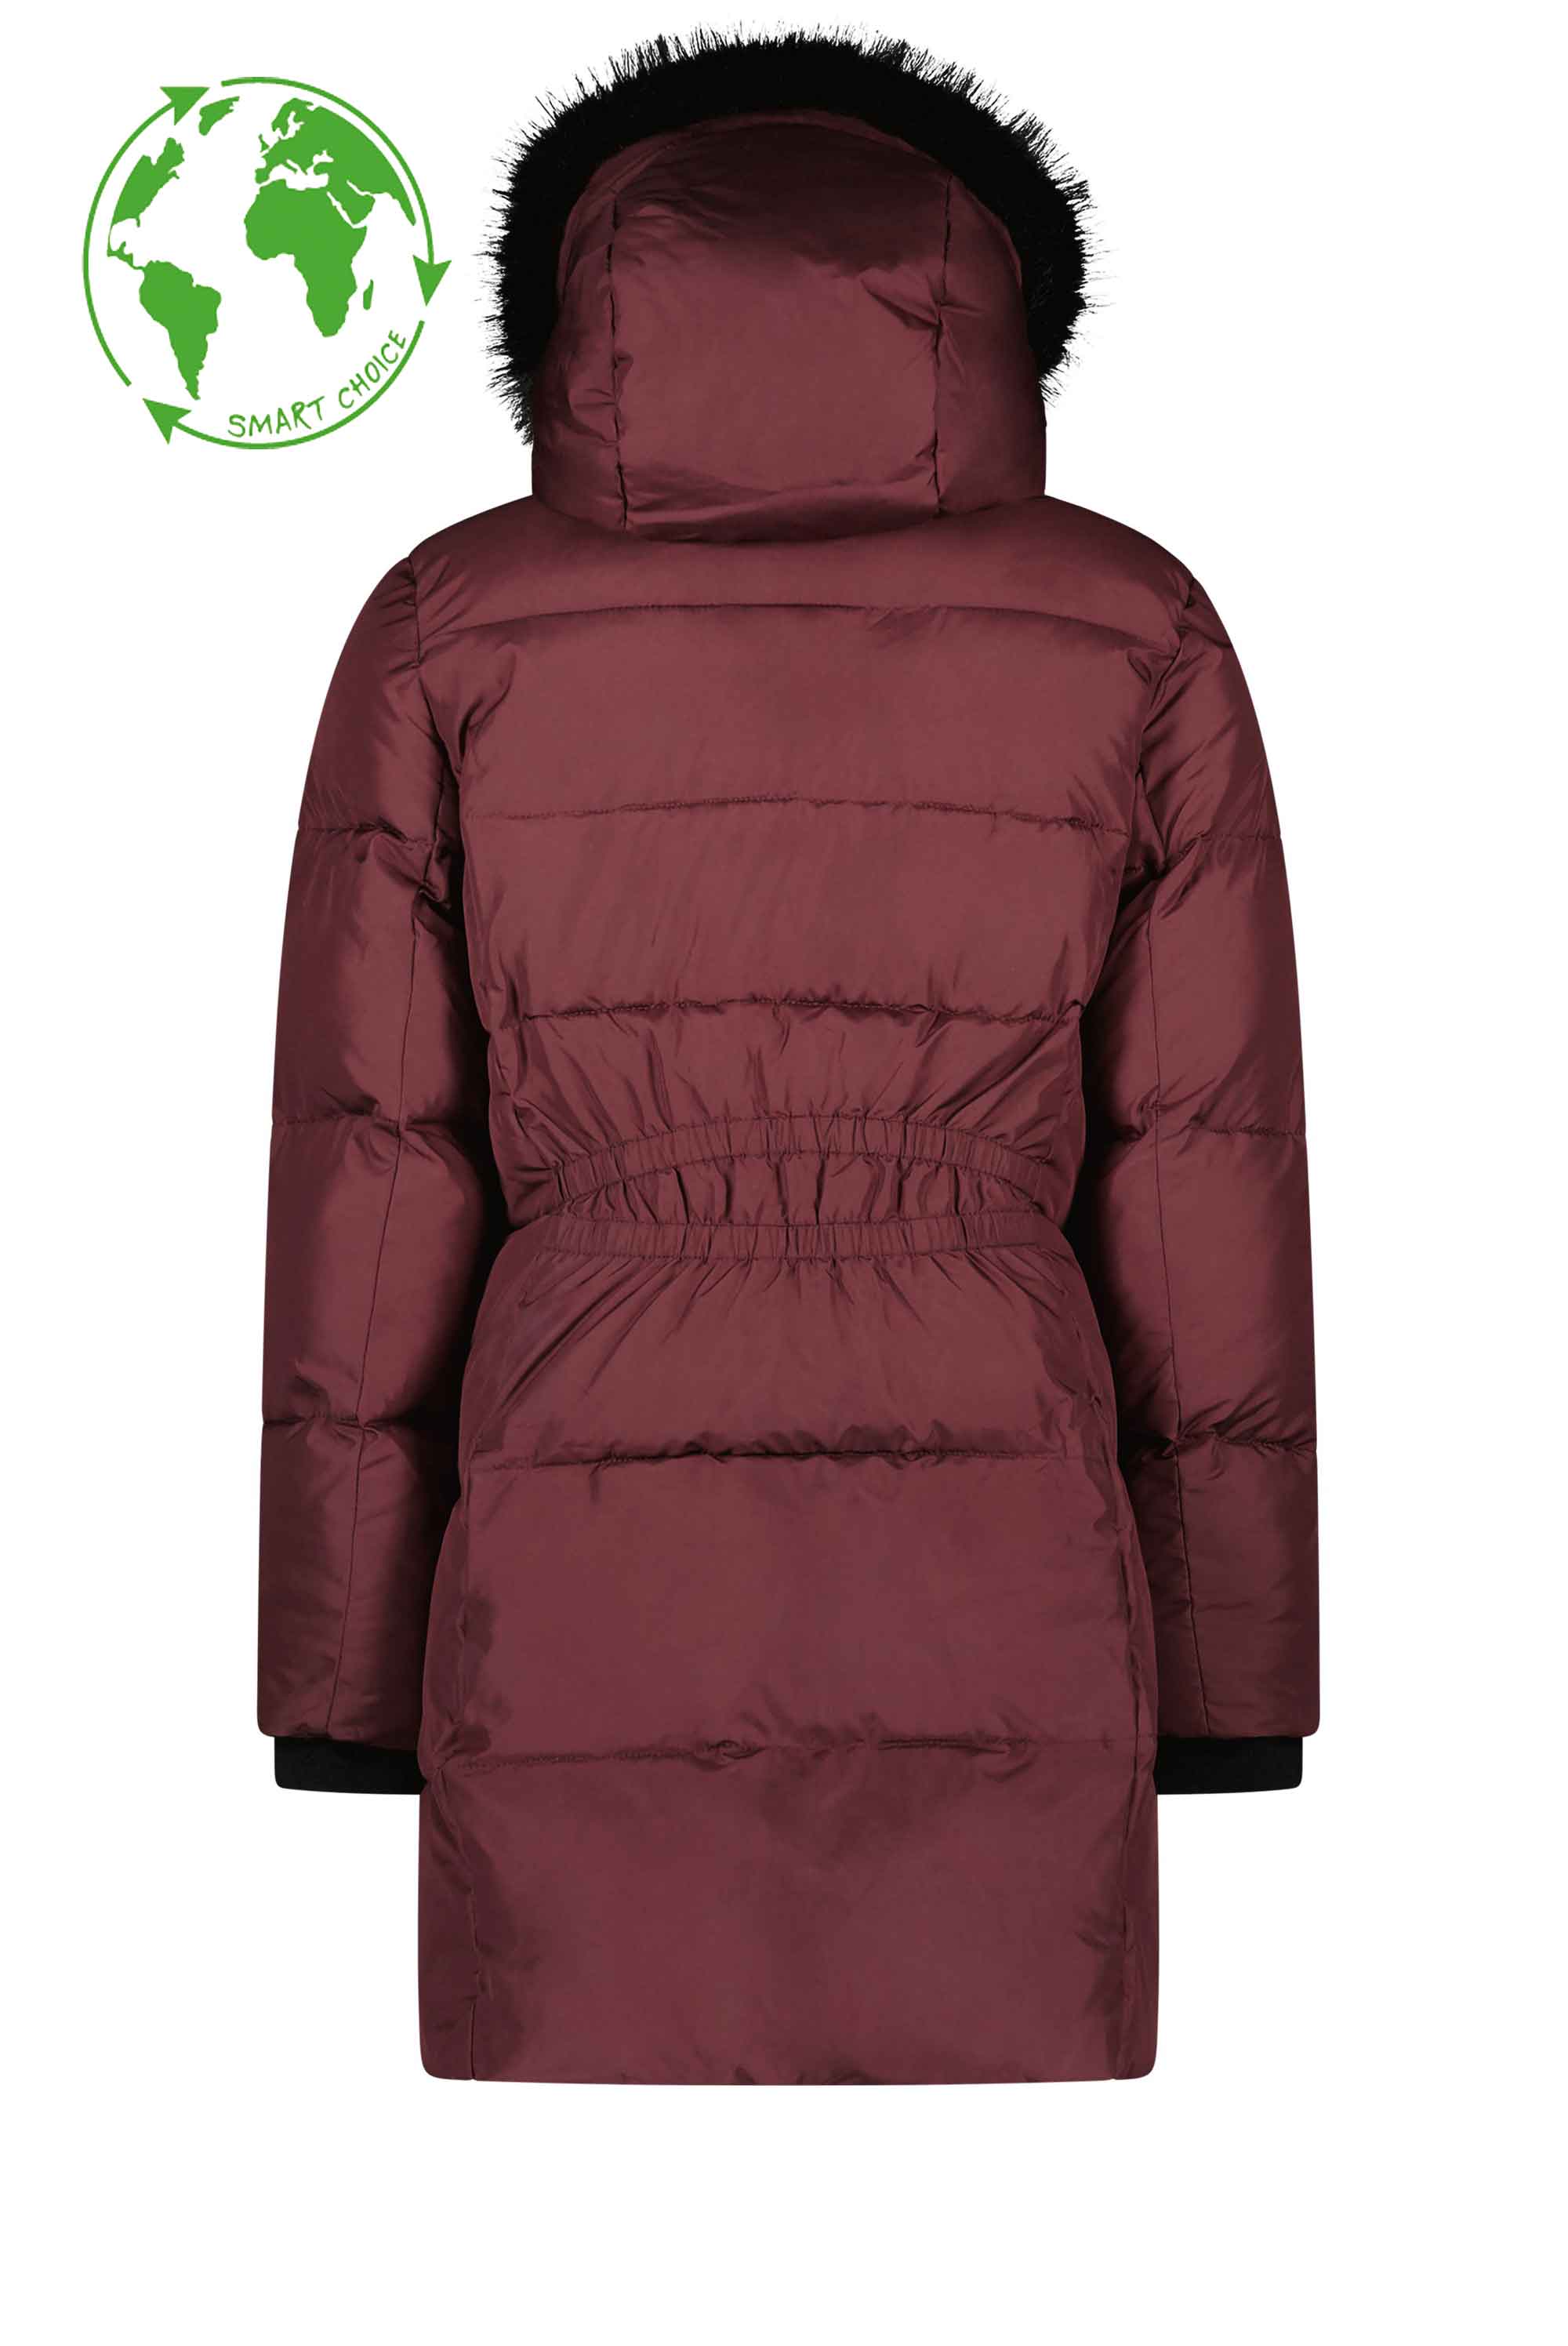 Meisjes Flo girls long hooded jacket with fur edge van Like Flo in de kleur Aubergine in maat 152.